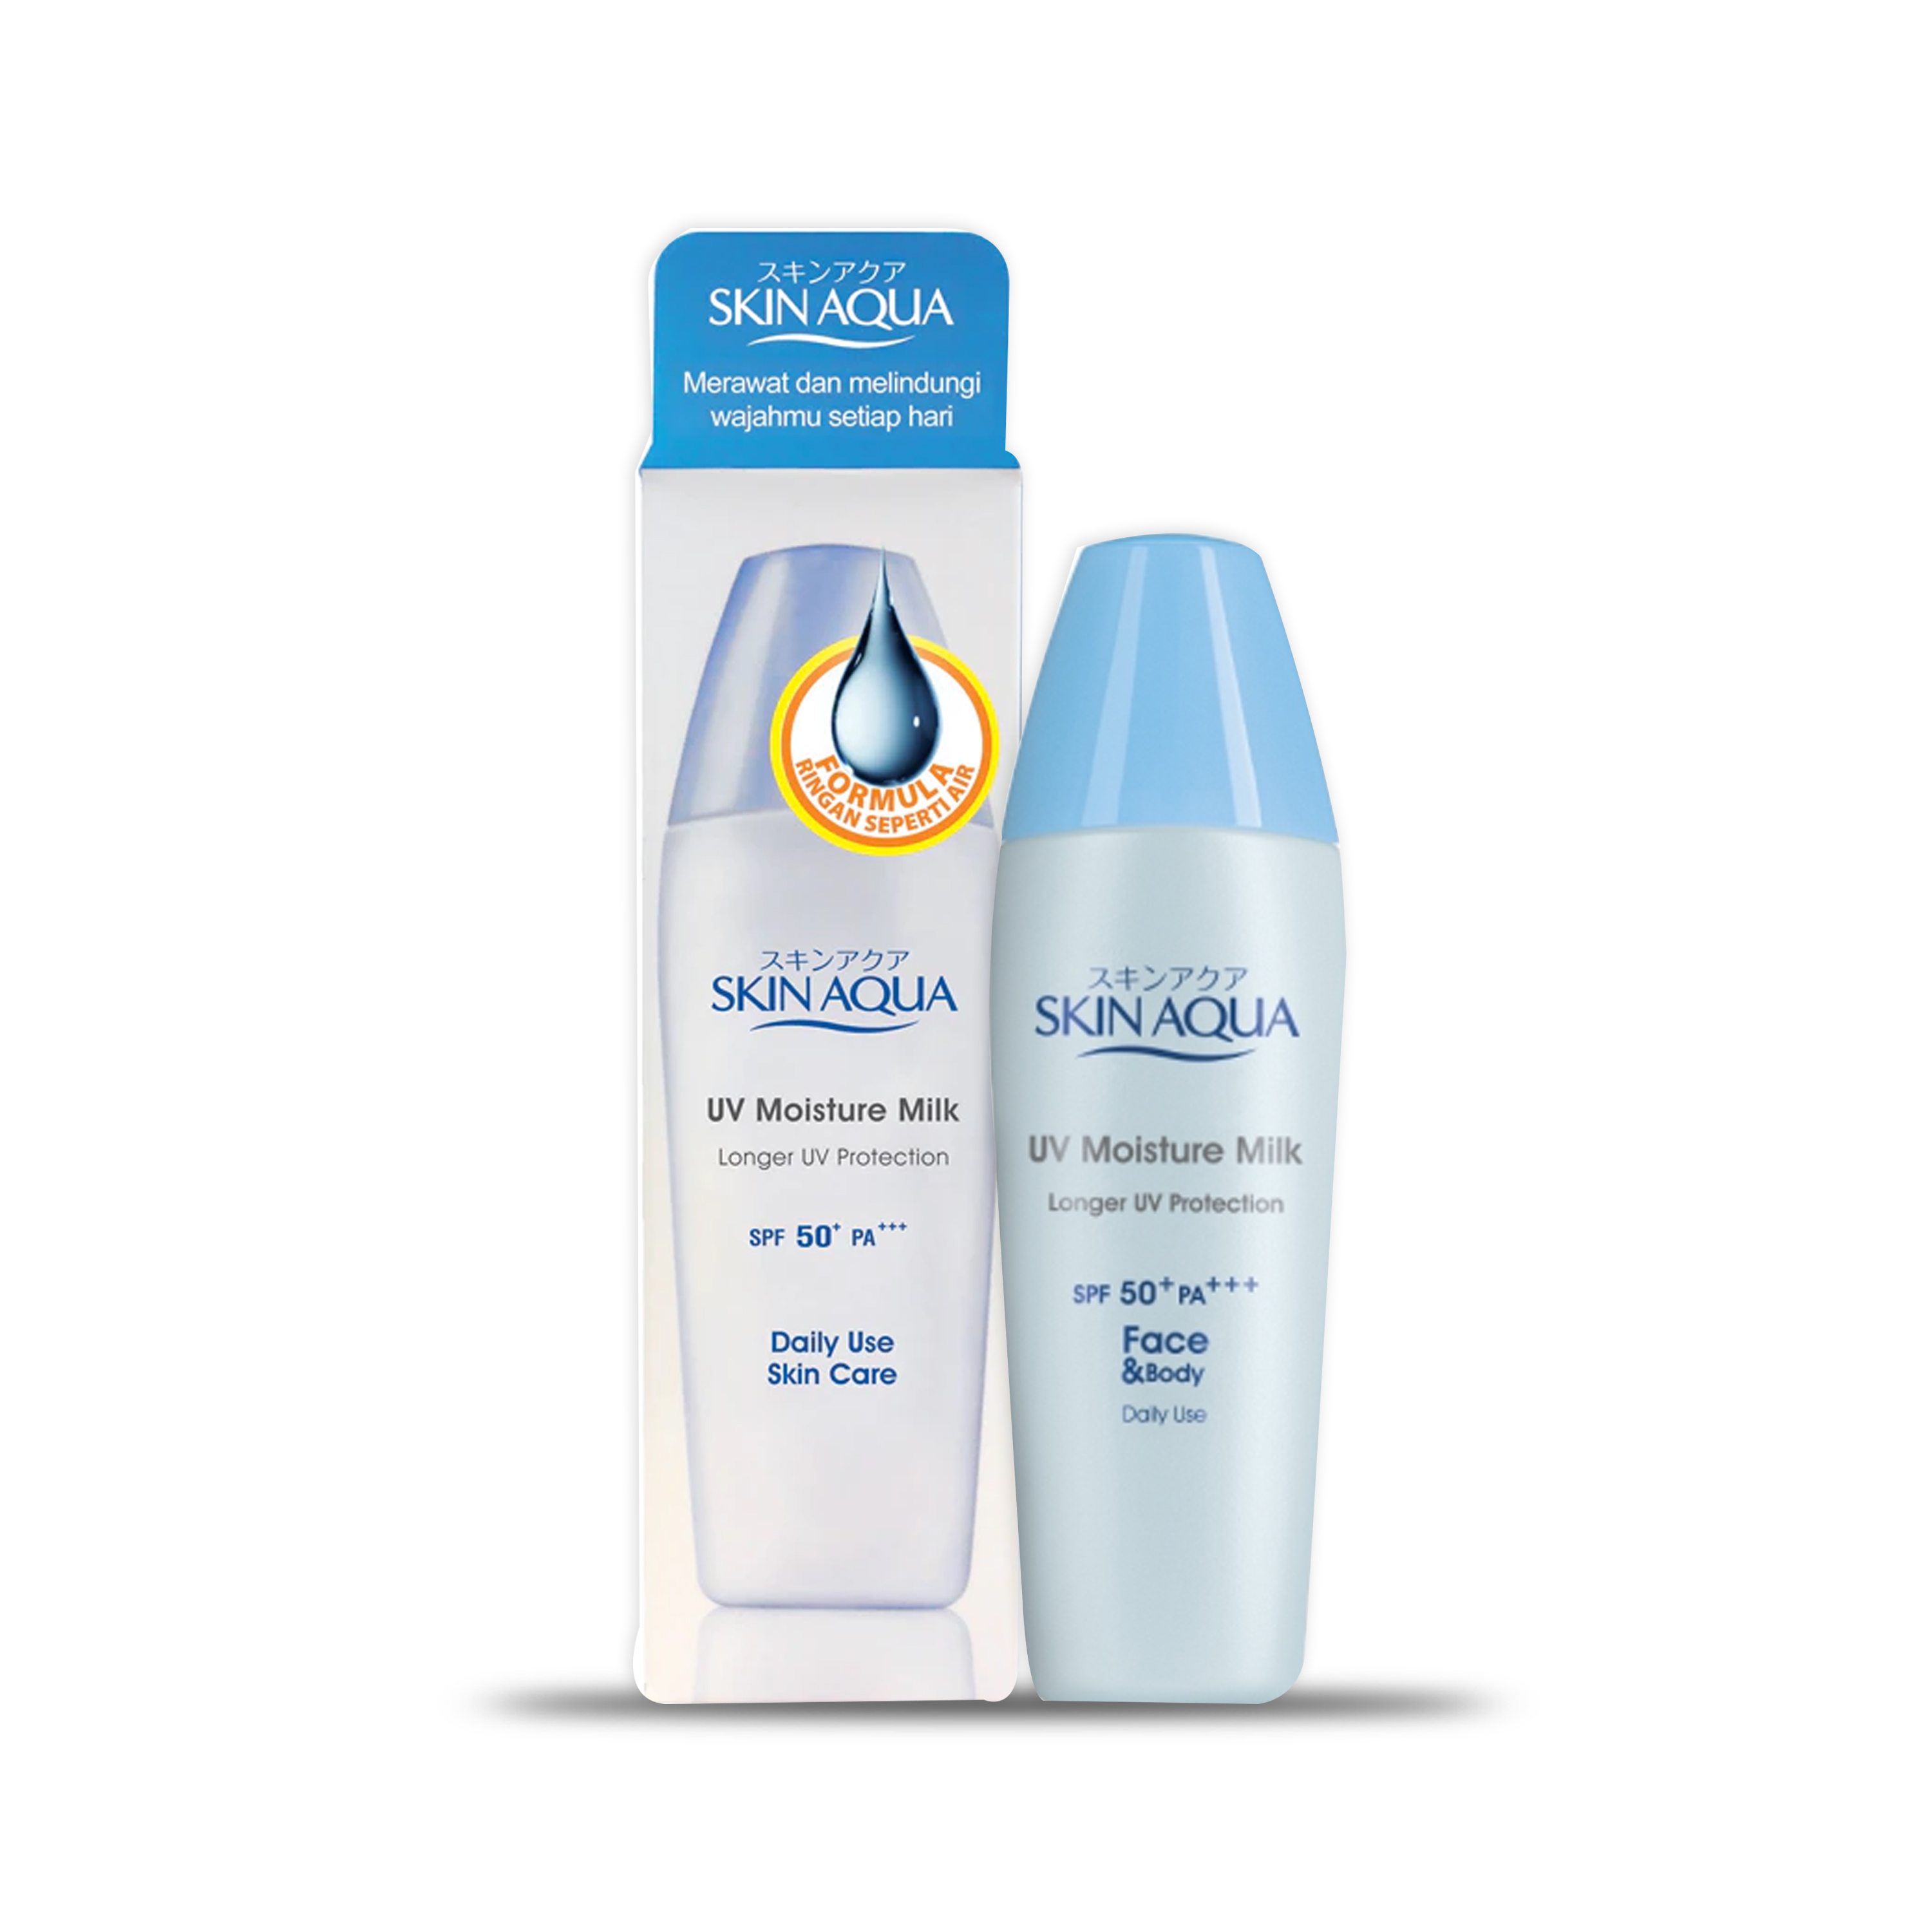 Skin Aqua UV Moisture Milk SPF 50+ PA+++ 40 g - Sunscreen